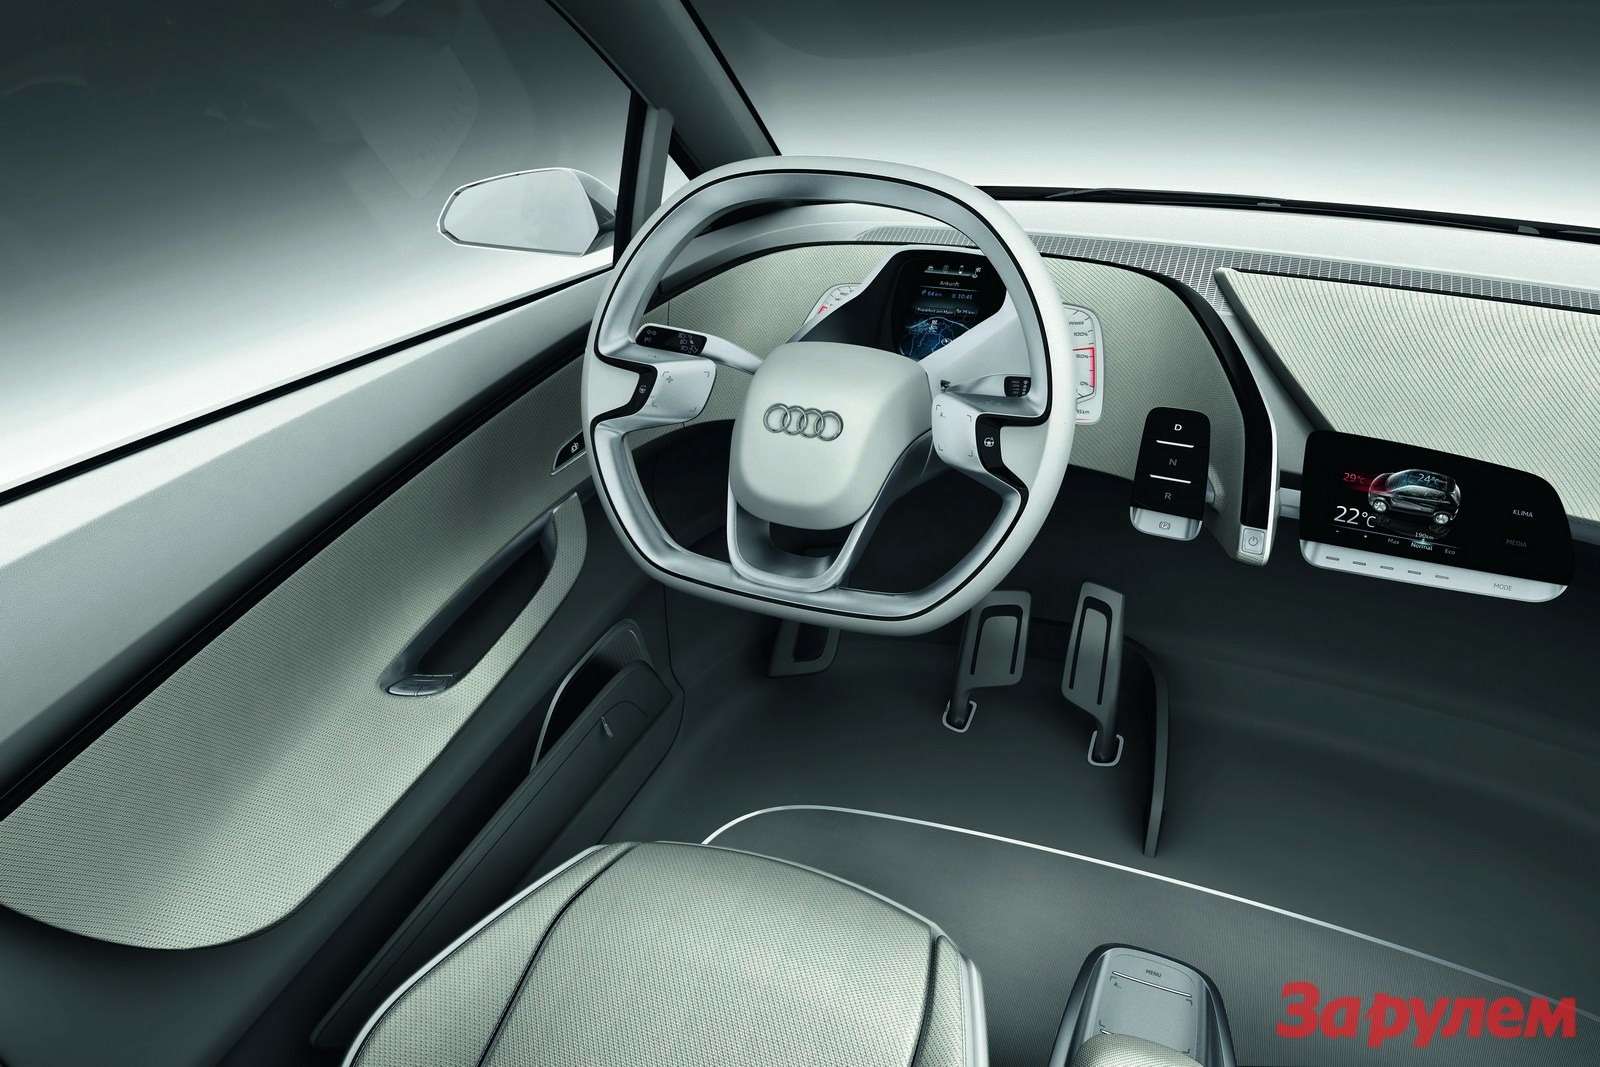 Audi_A2-Concept-14